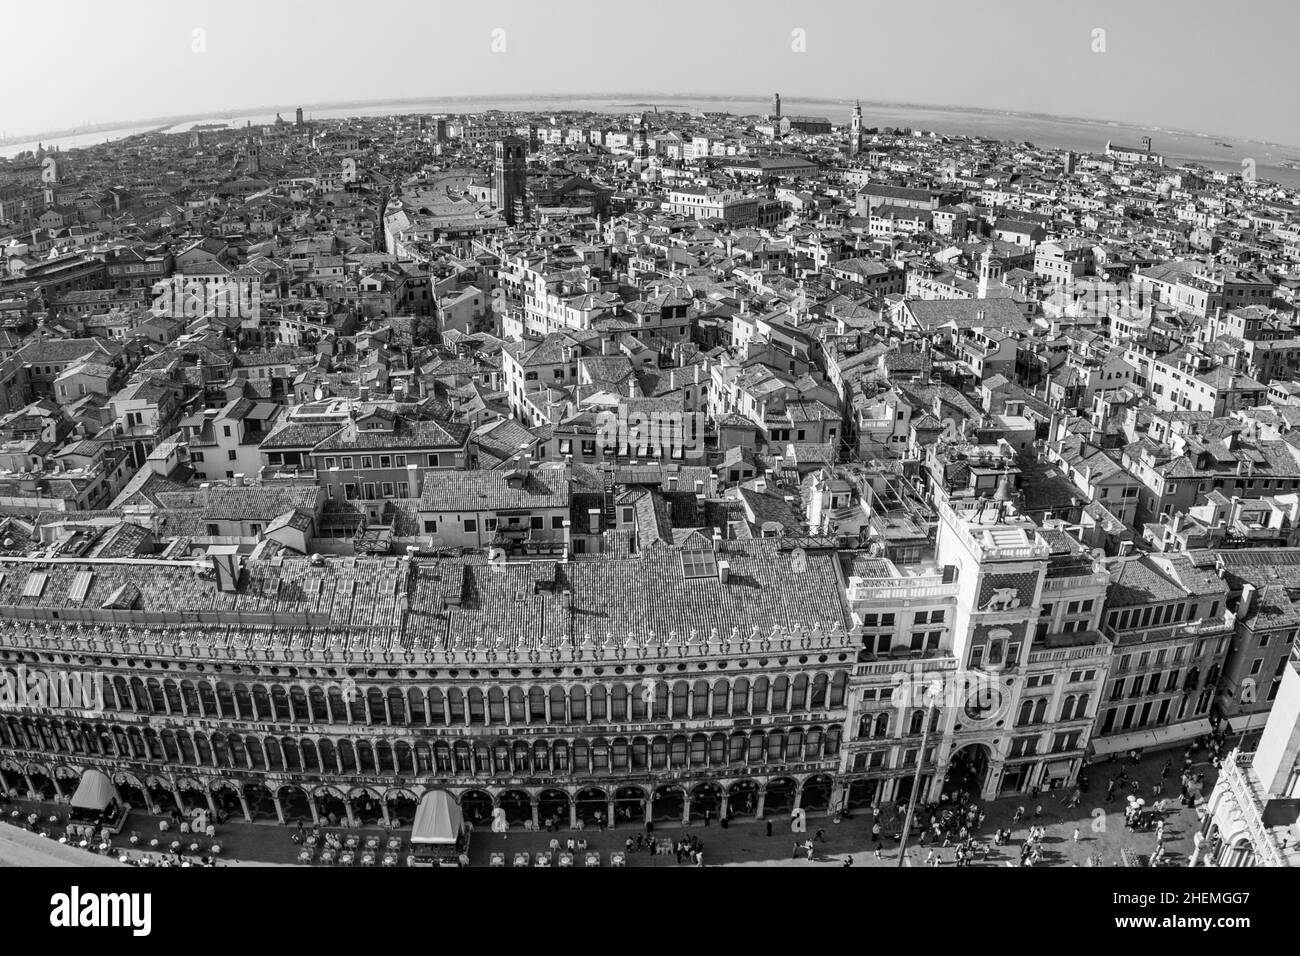 Con vistas a la hermosa ciudad y a los antiguos palacios de venecia, con la laguna desde la torre Markus Foto de stock